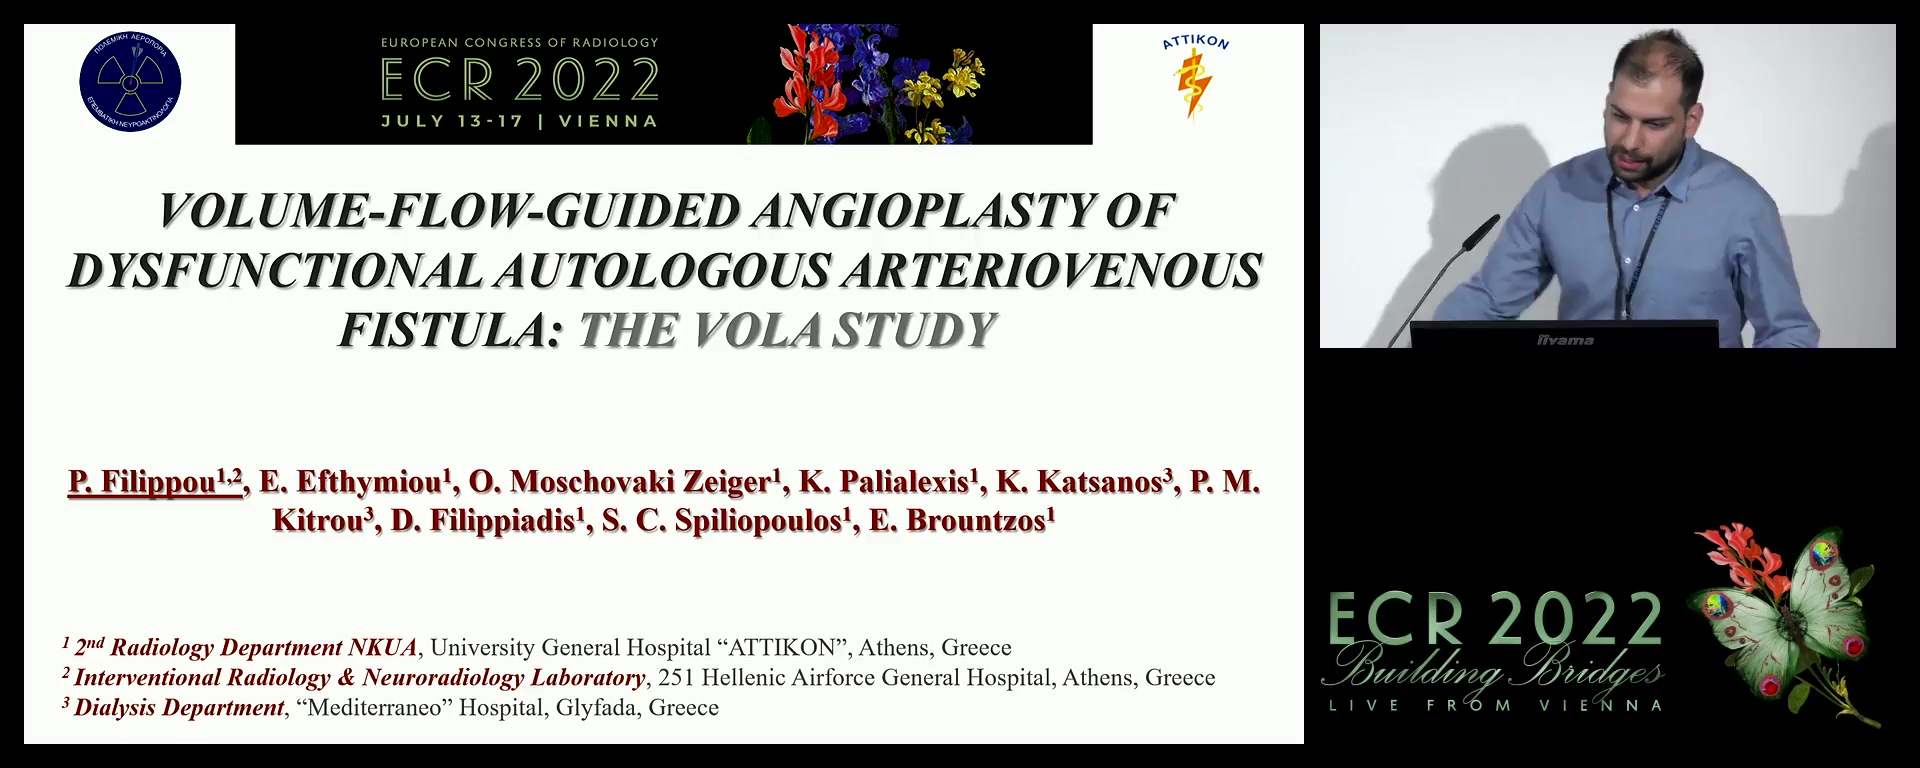 Volume-flow-guided angioplasty of dysfunctional autologous arteriovenous fistula: the VOLA Study - Panagiotis Filippou, Athens / GR